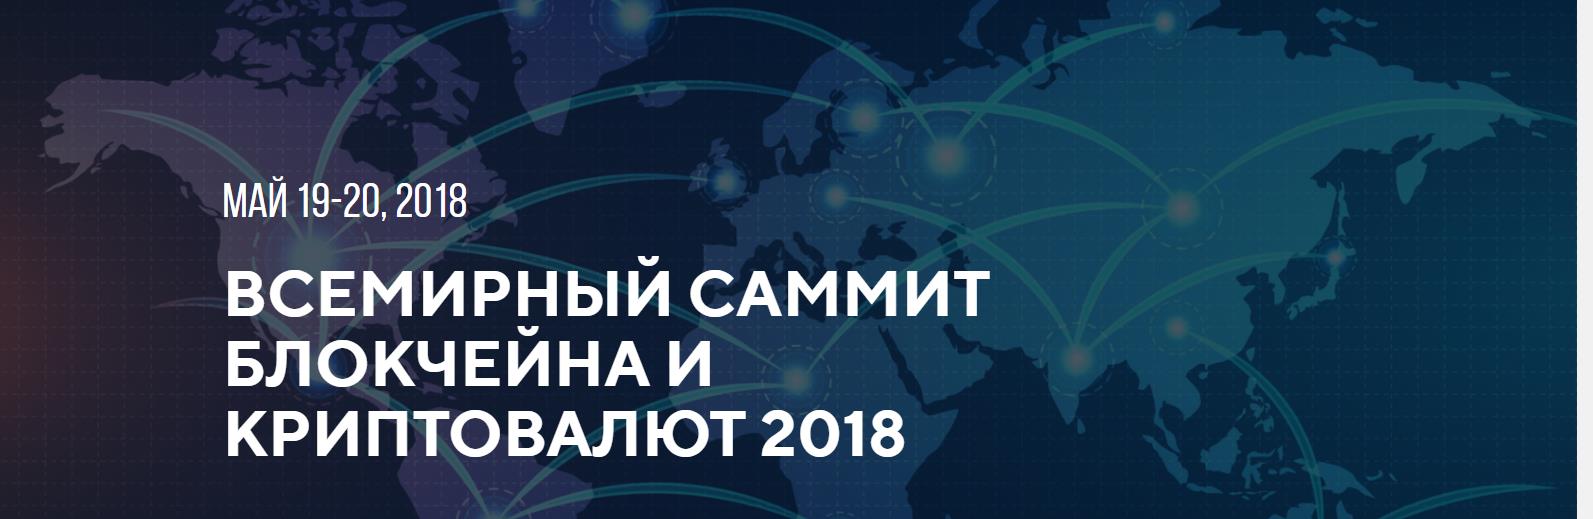 Всемирный саммит блокчейна и криптовалют 2018